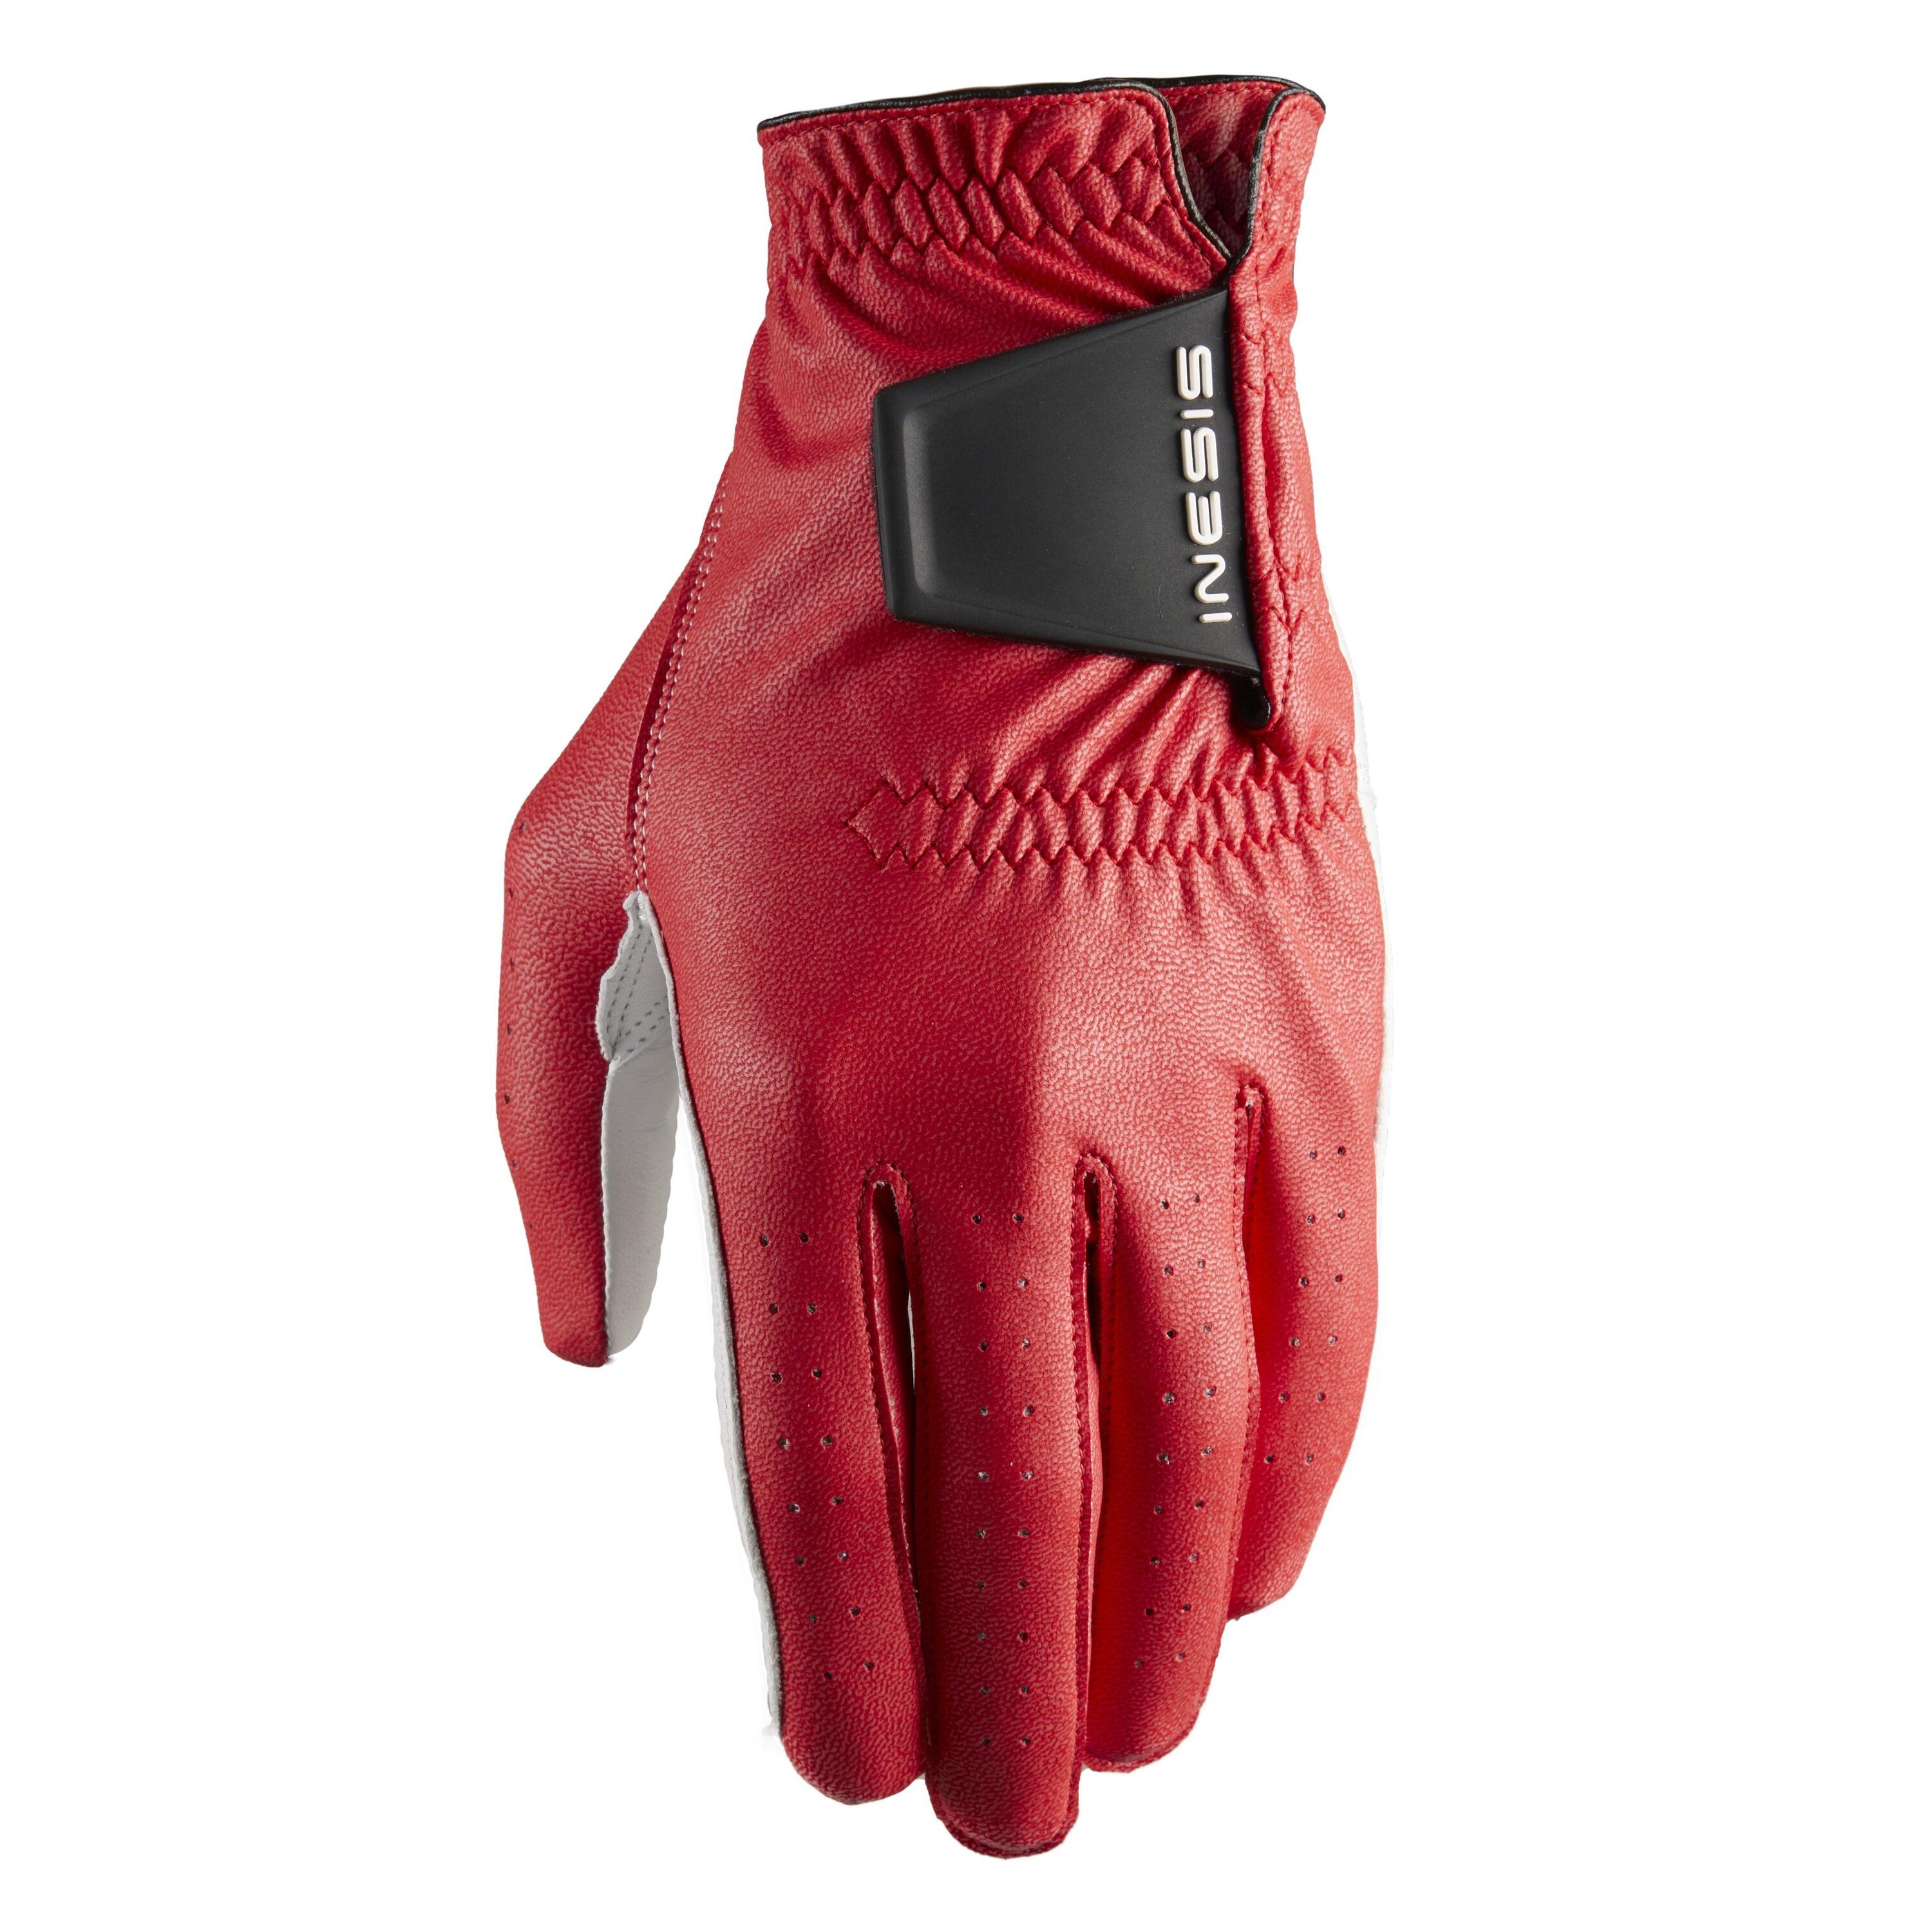 Men's golf glove - 500 red 1/3